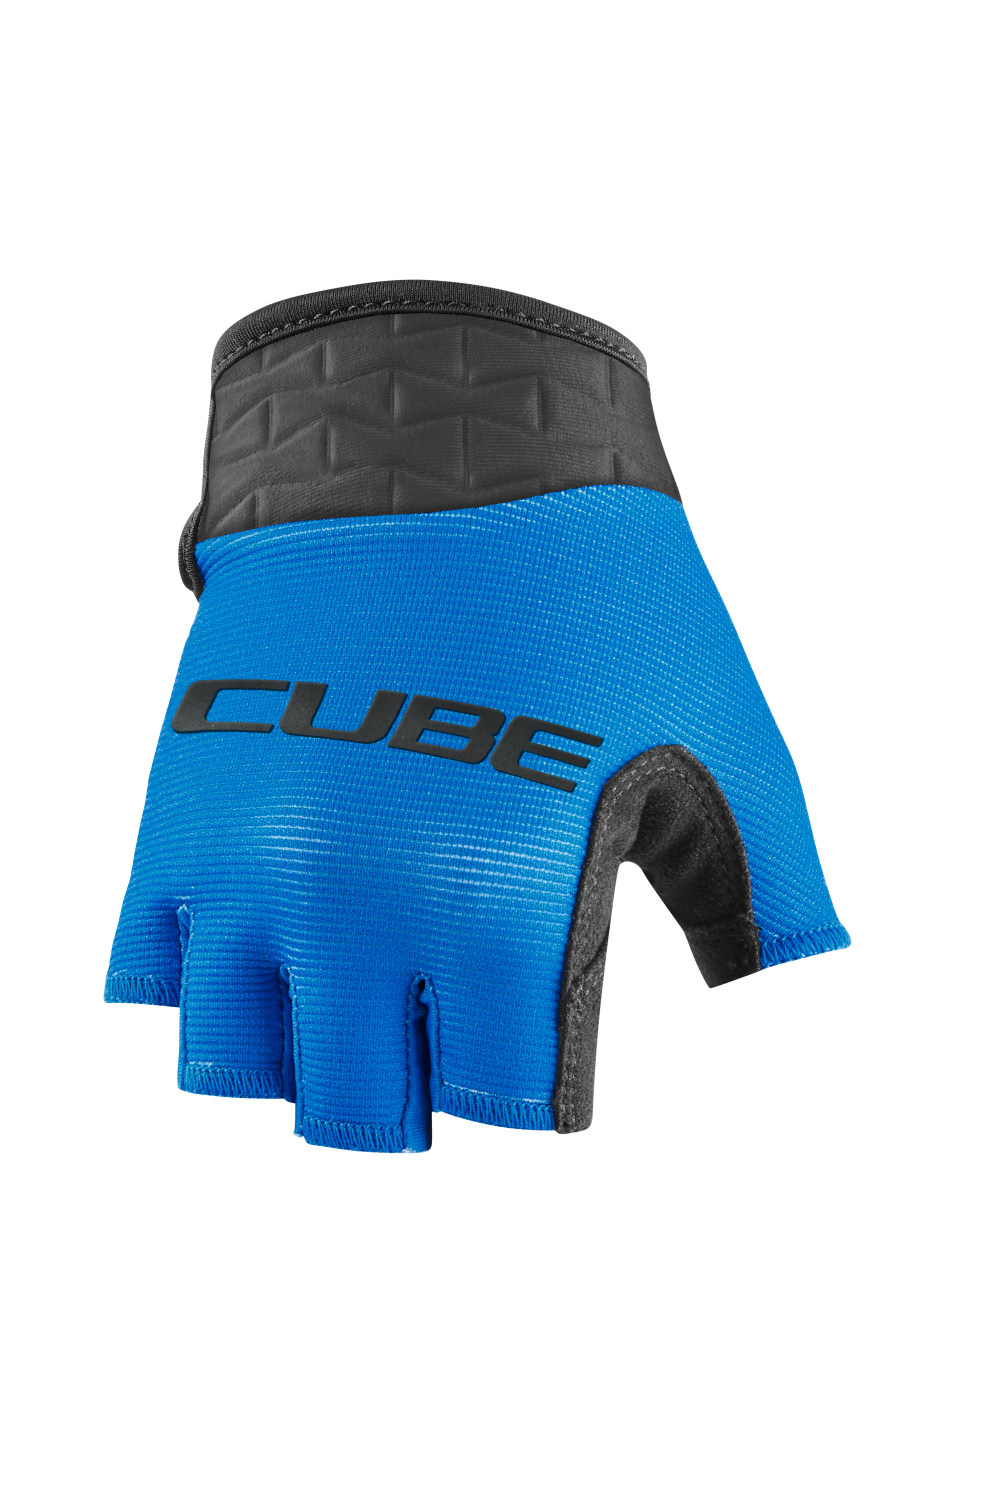 vlinder gebruiker Vijandig Cube Performance handschoenen kopen? | Cube Kinderkleding